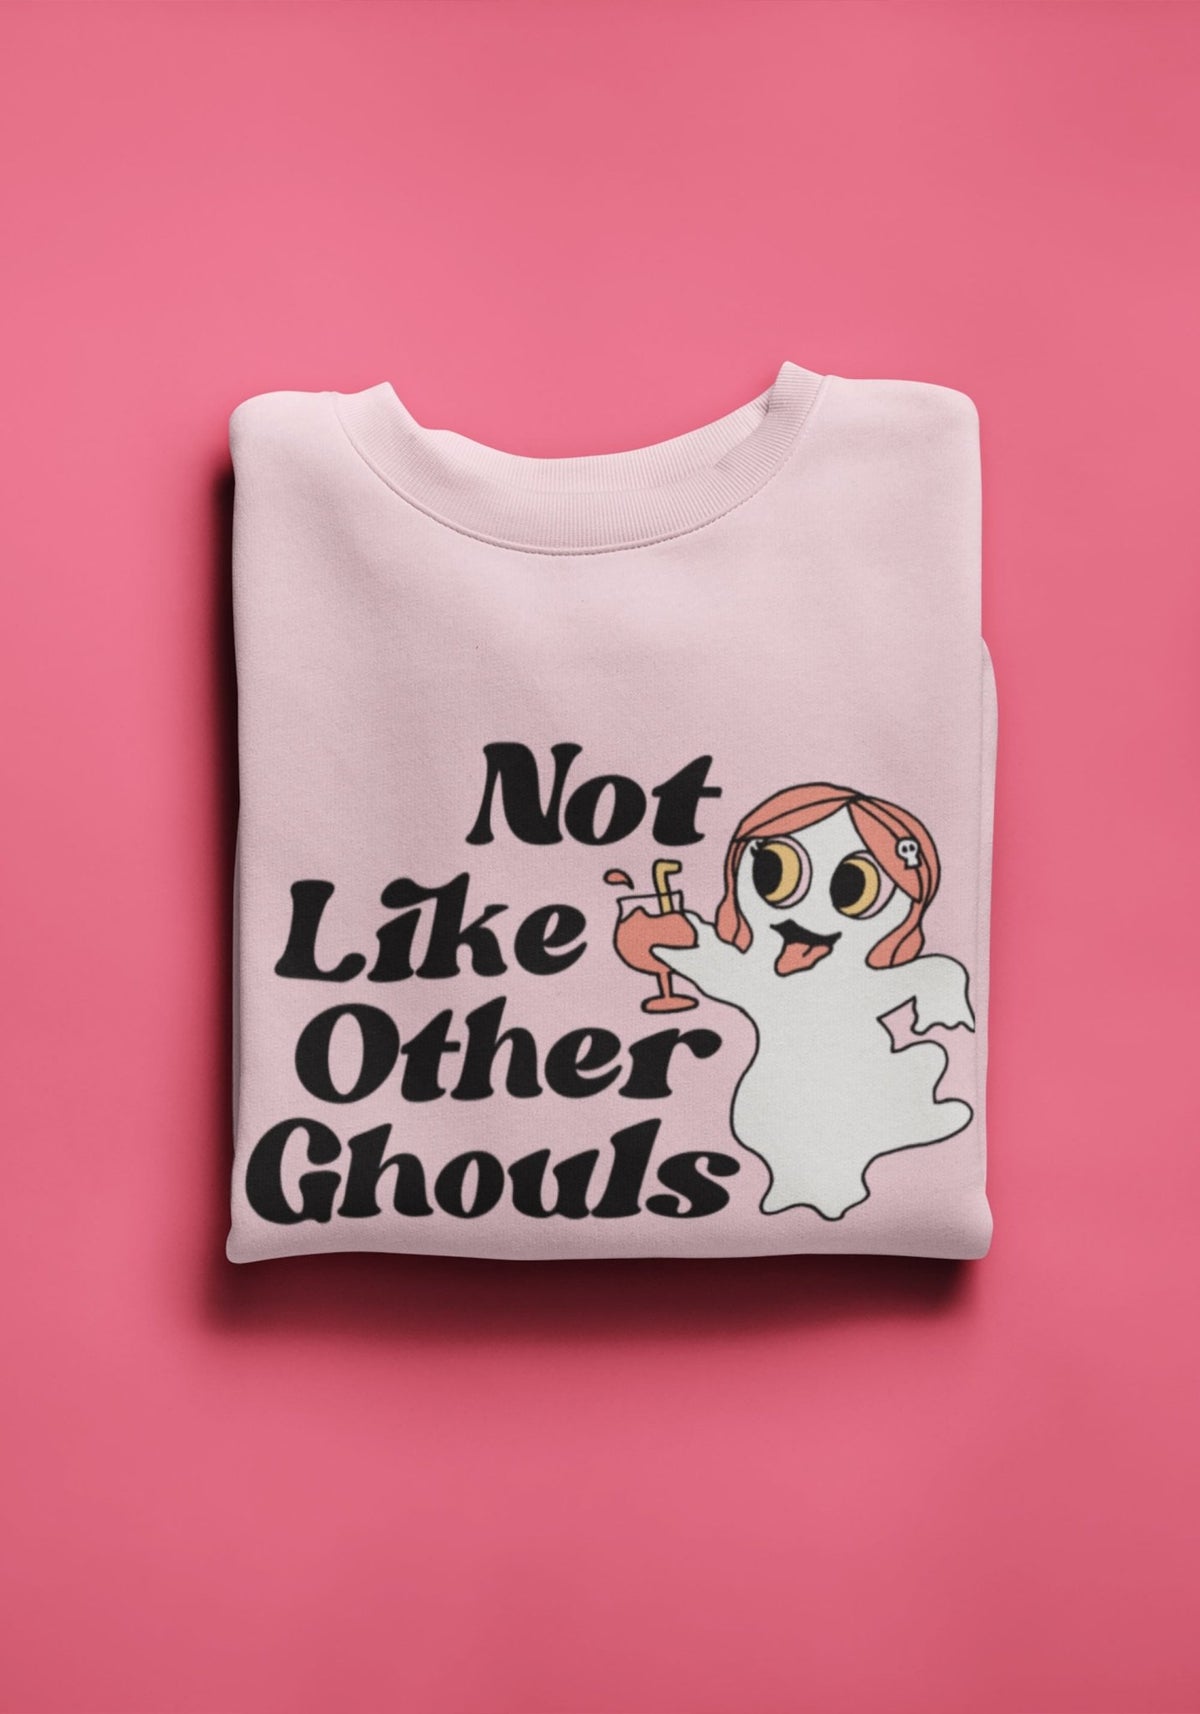 Not Like Other Ghouls Sweatshirt by kaeraz dead drink ghost